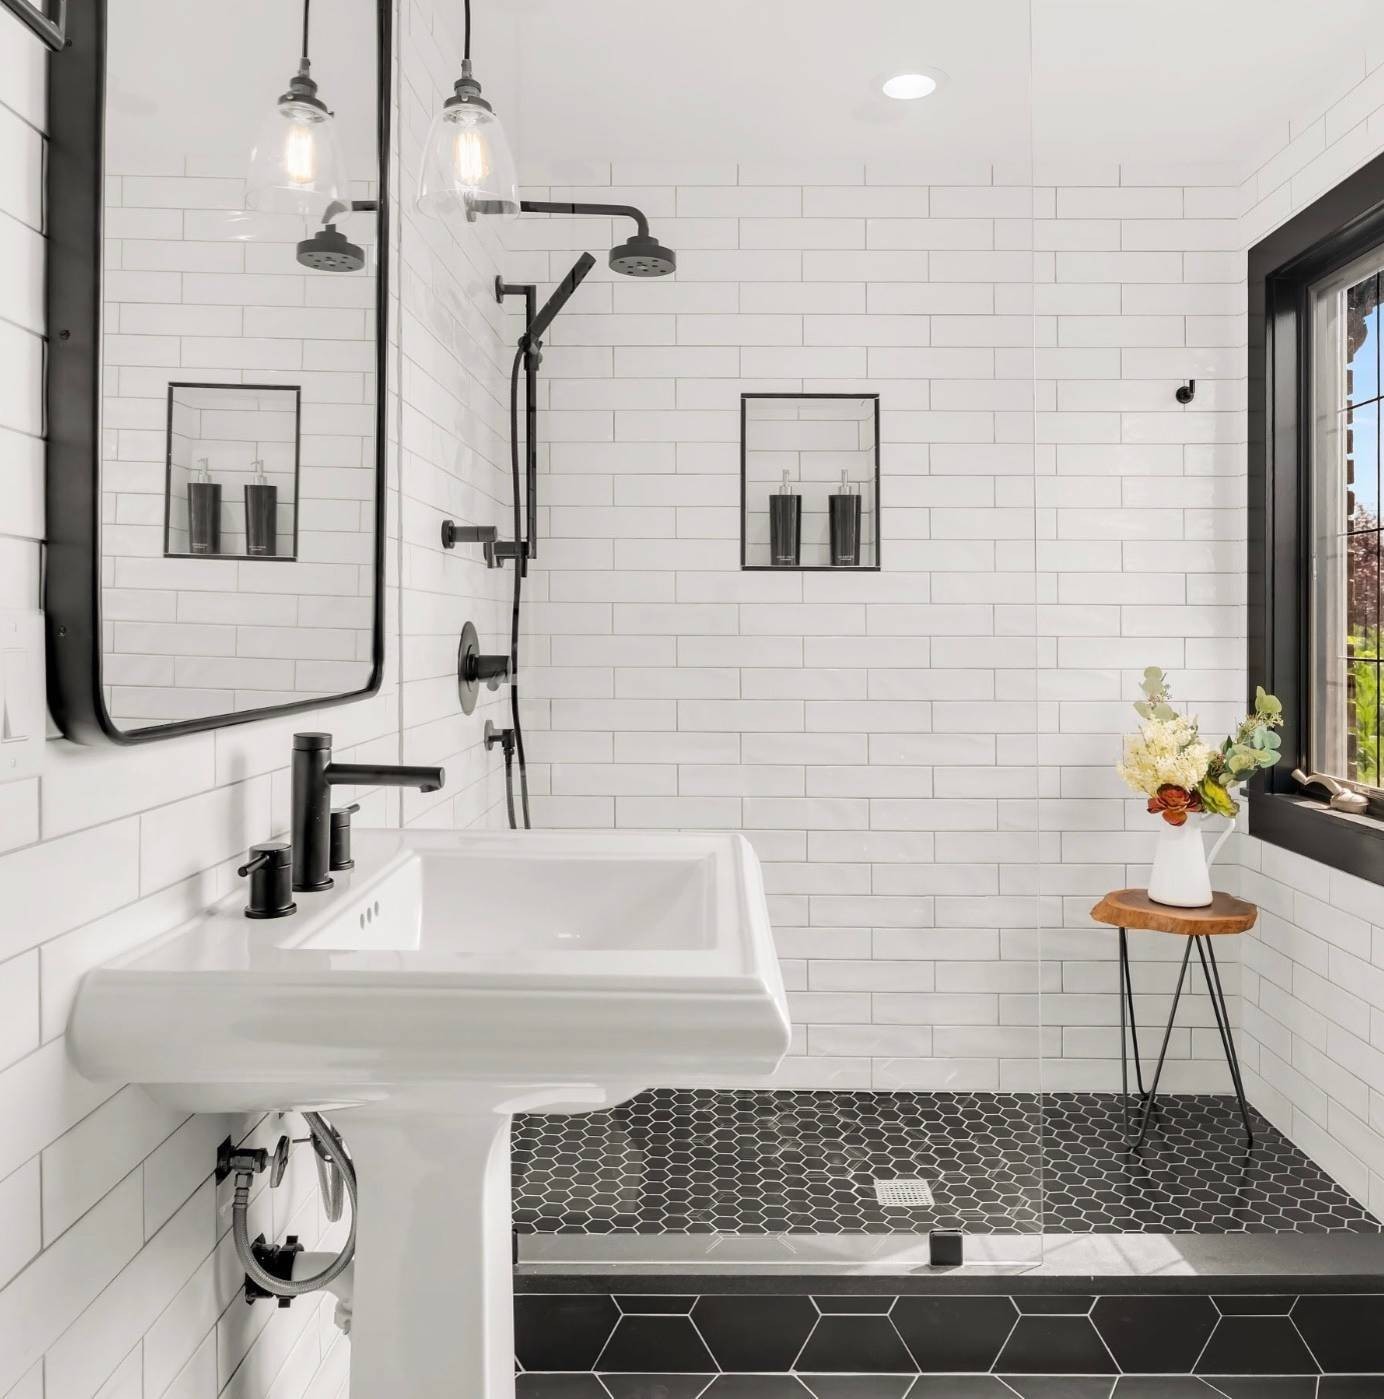 
Cửa kính không khung ngày càng được ưa chuộng, chúng giúp cho phòng tắm nhà bạn rộng rãi hơn
